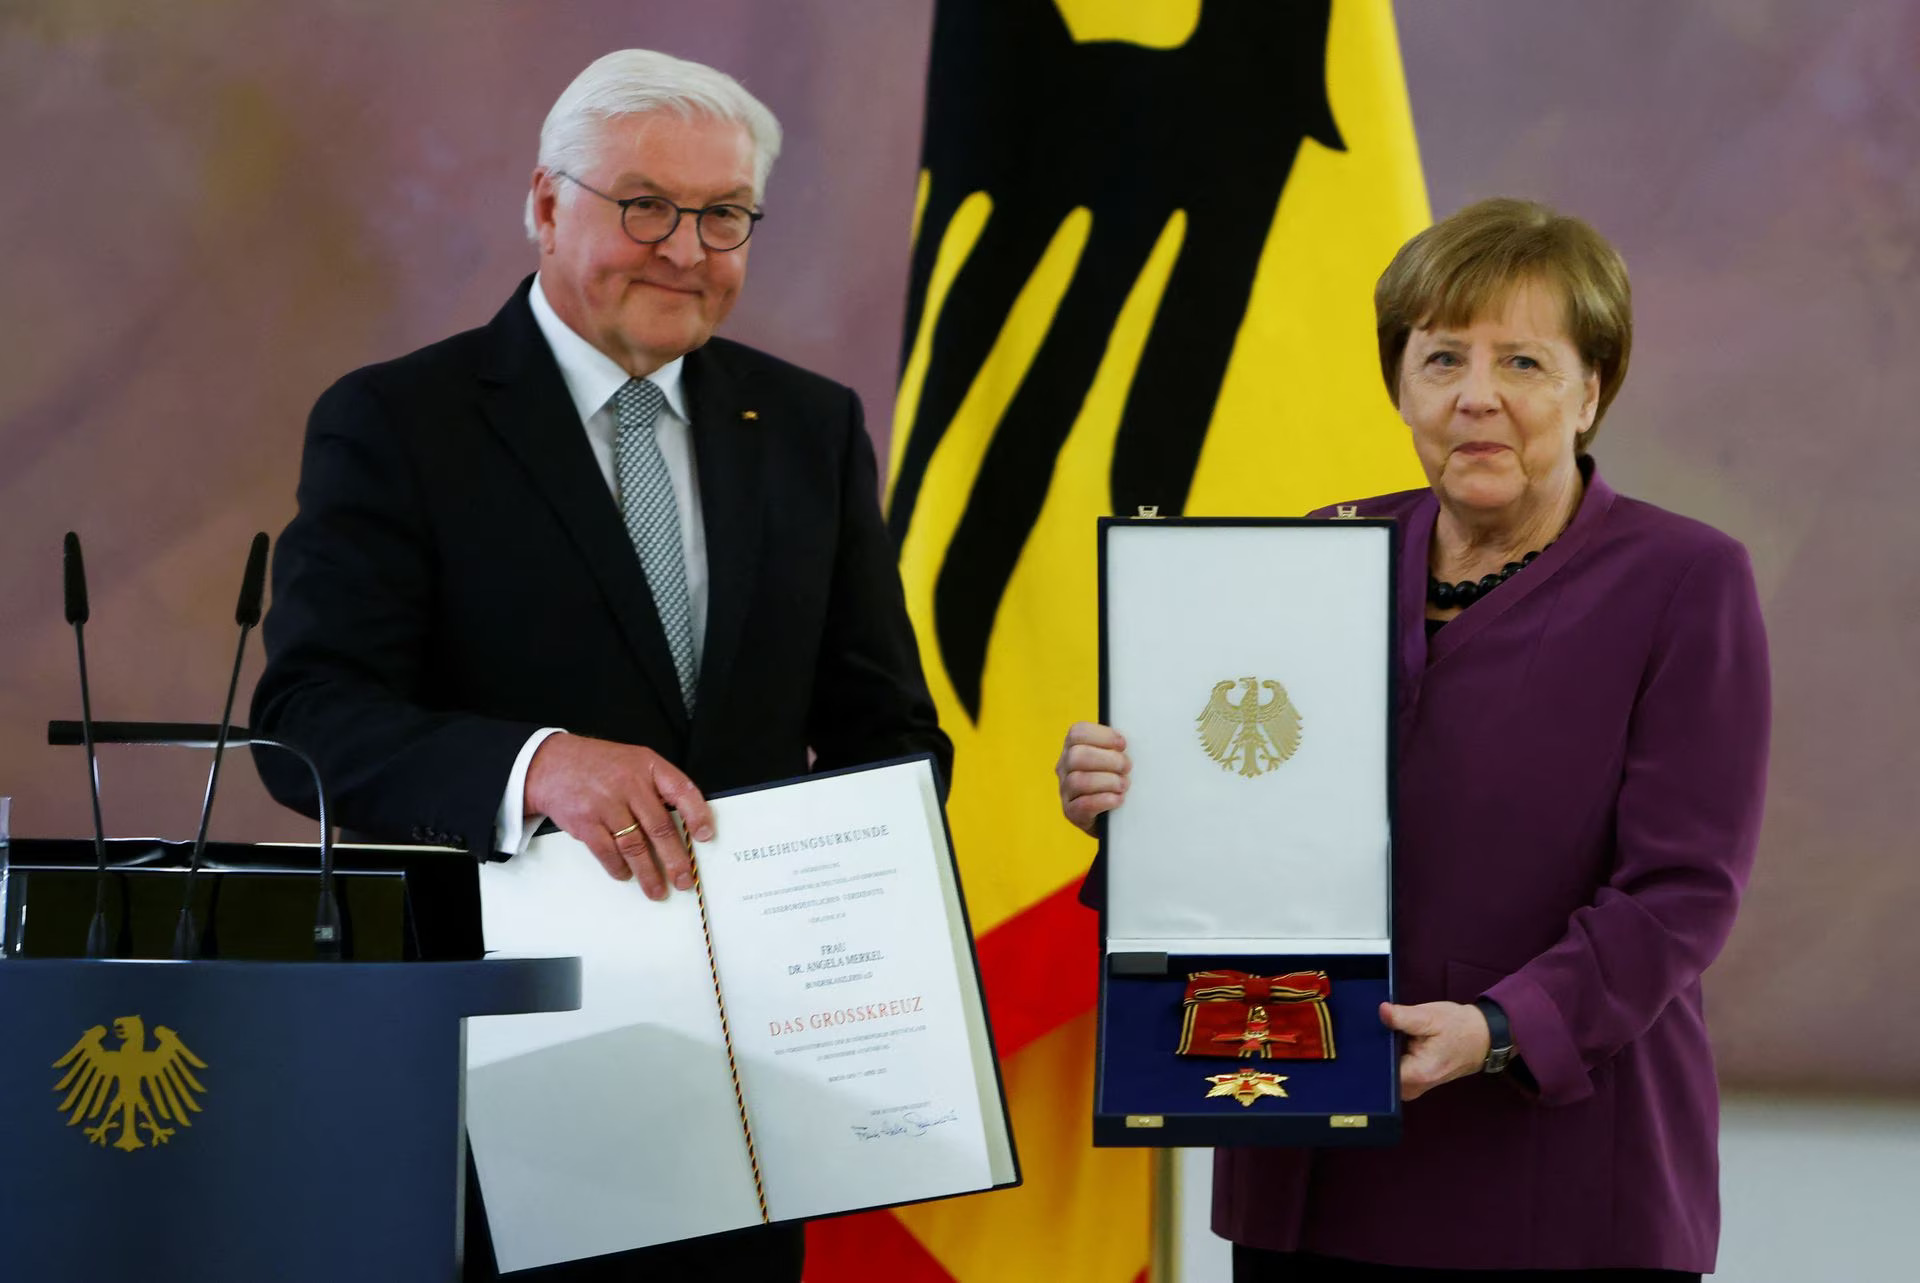 Đức vinh danh cựu Thủ tướng Angela Merkel